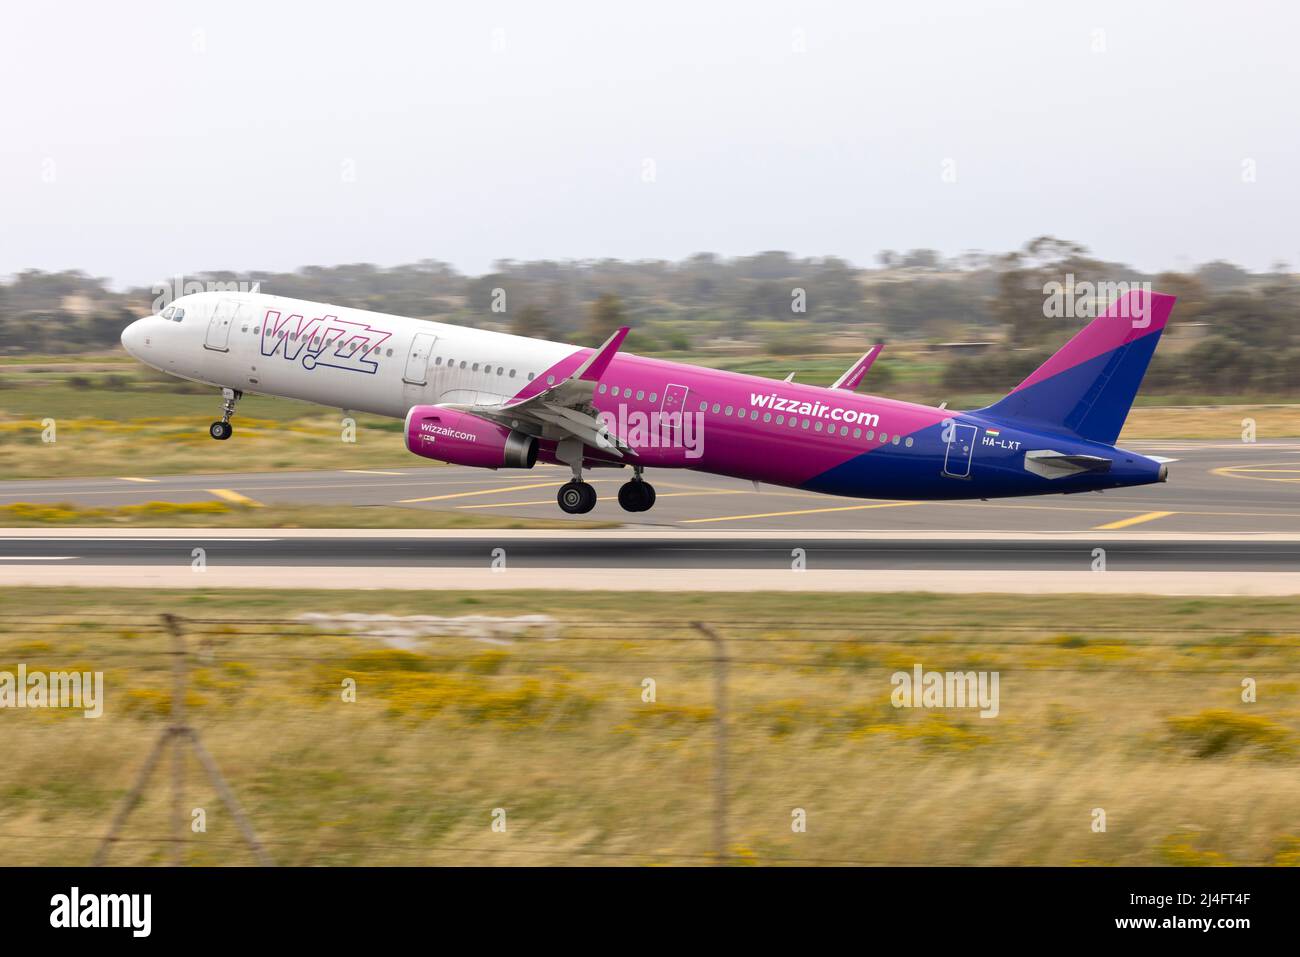 Wizz Air Airbus A321-231 (REG: HA-LXT) décollage de la piste 13, destination: Varsovie, Pologne. Banque D'Images